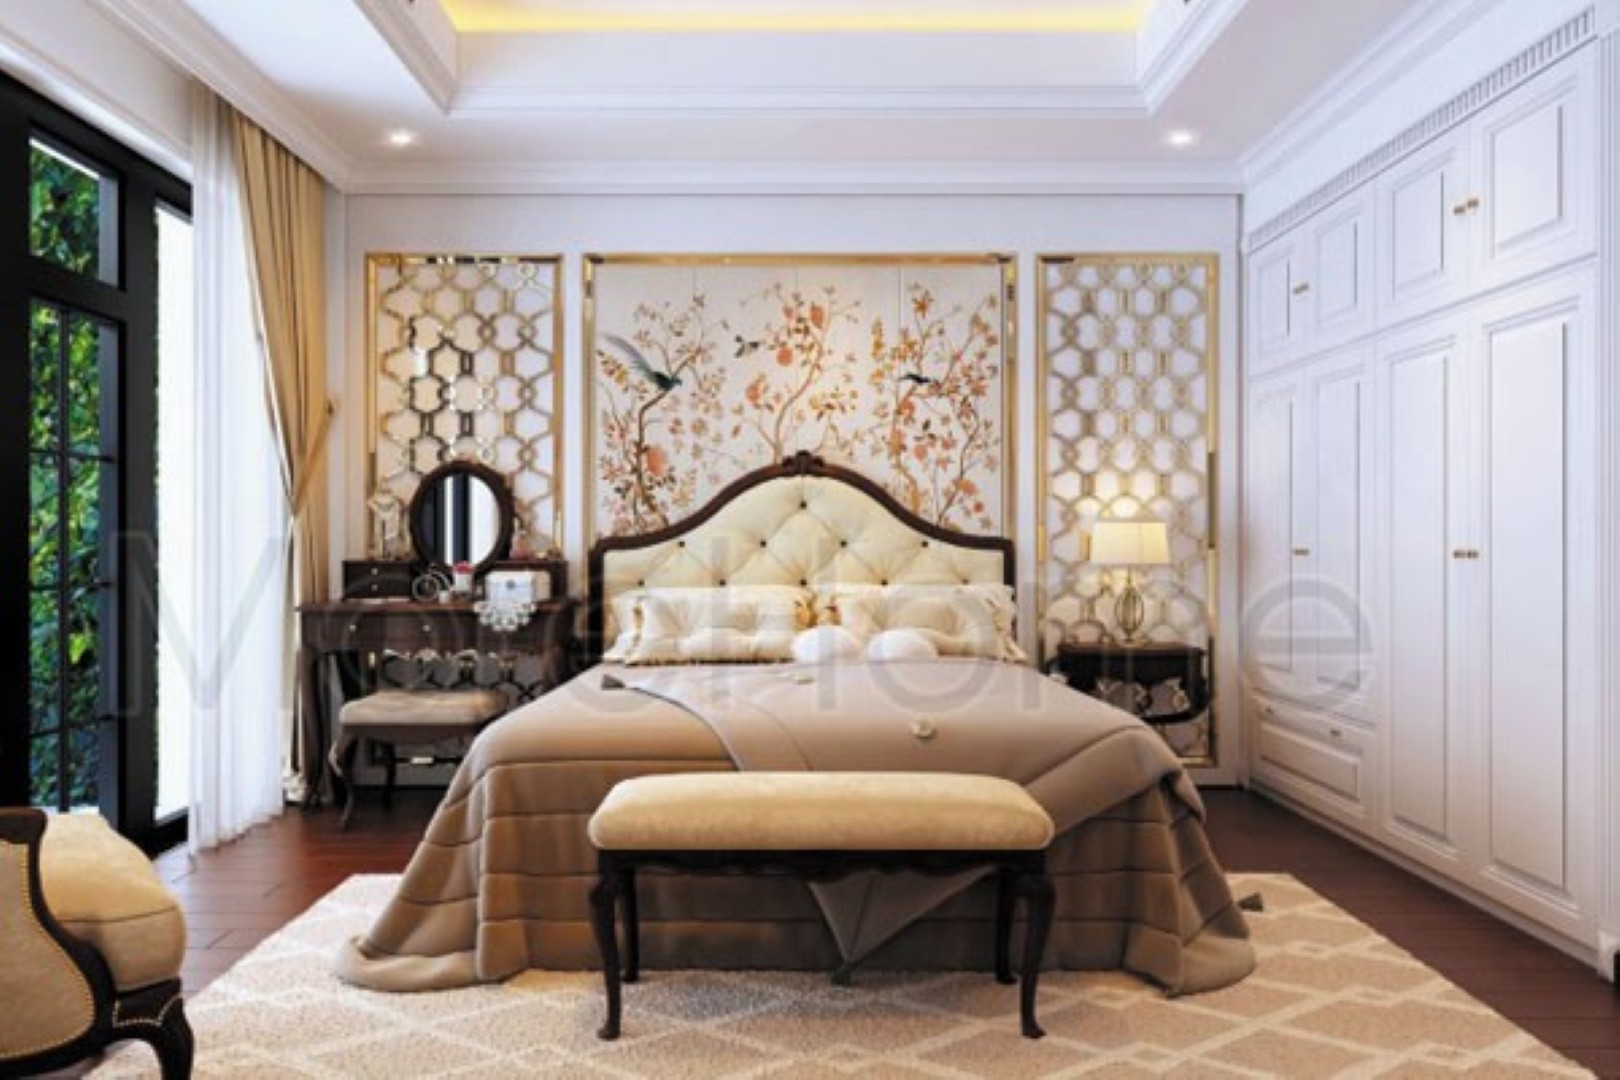 MOREHOME-chuyên thiết kế giường ngủ tân cổ điển đẹp